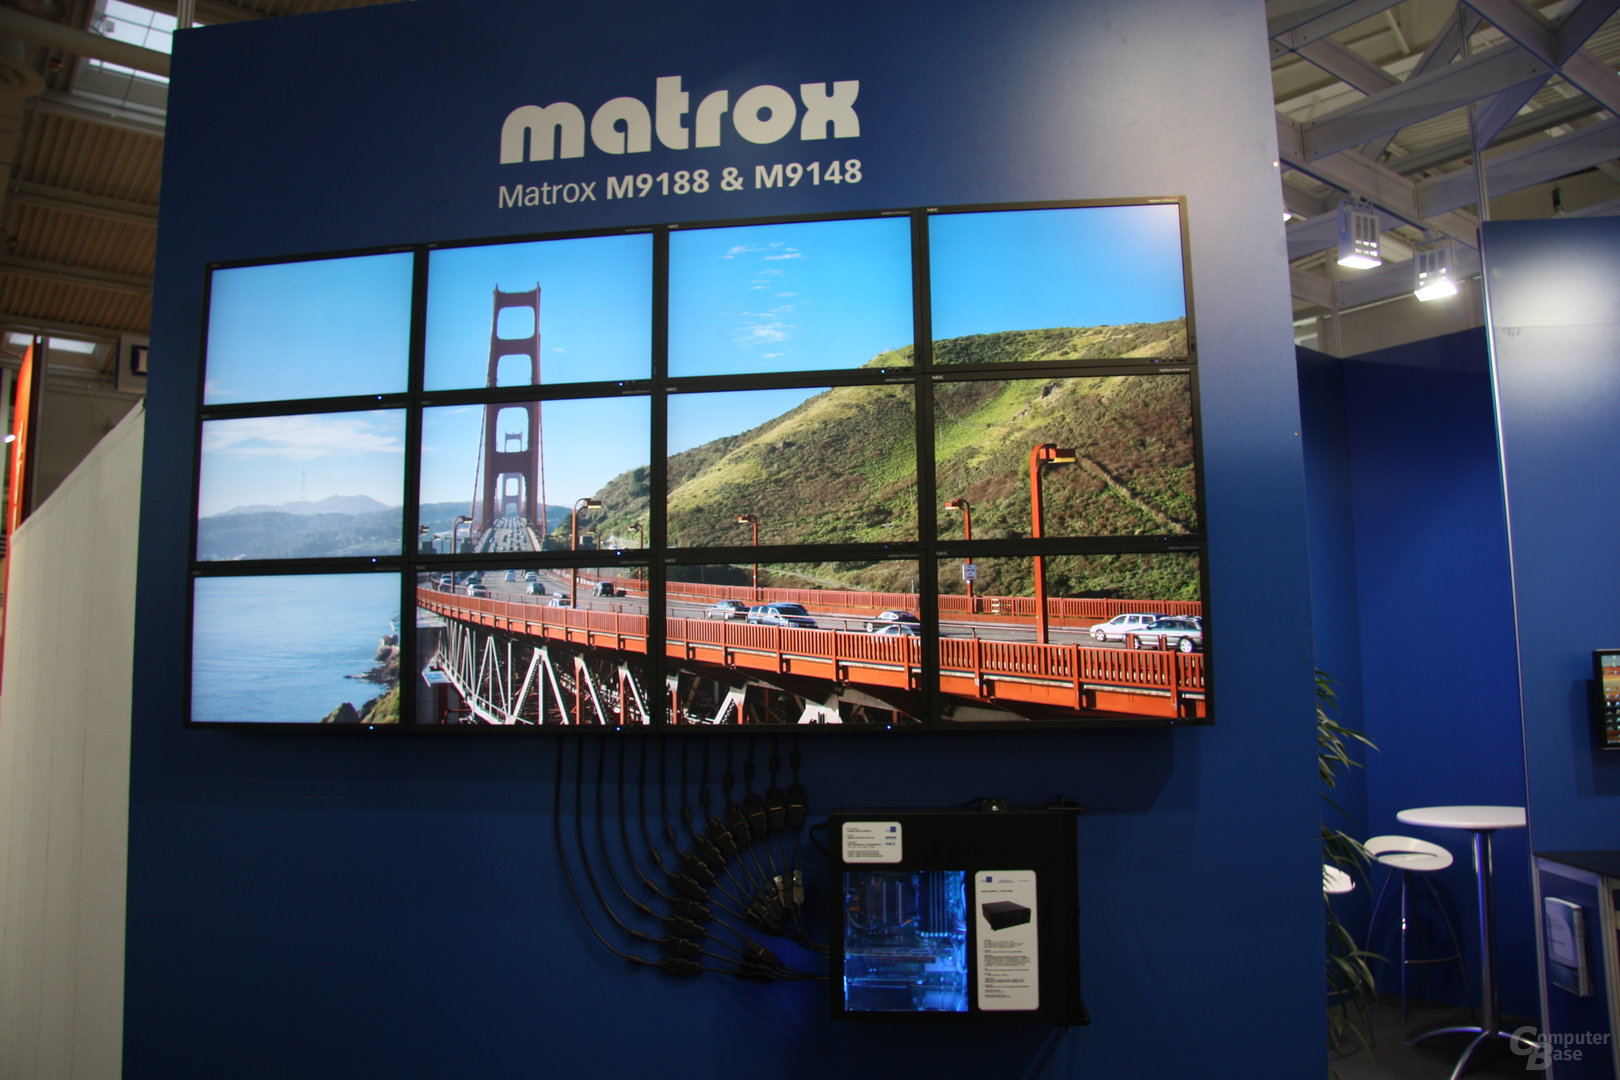 Matrox-Grafikkarten steuern 12 Monitore an